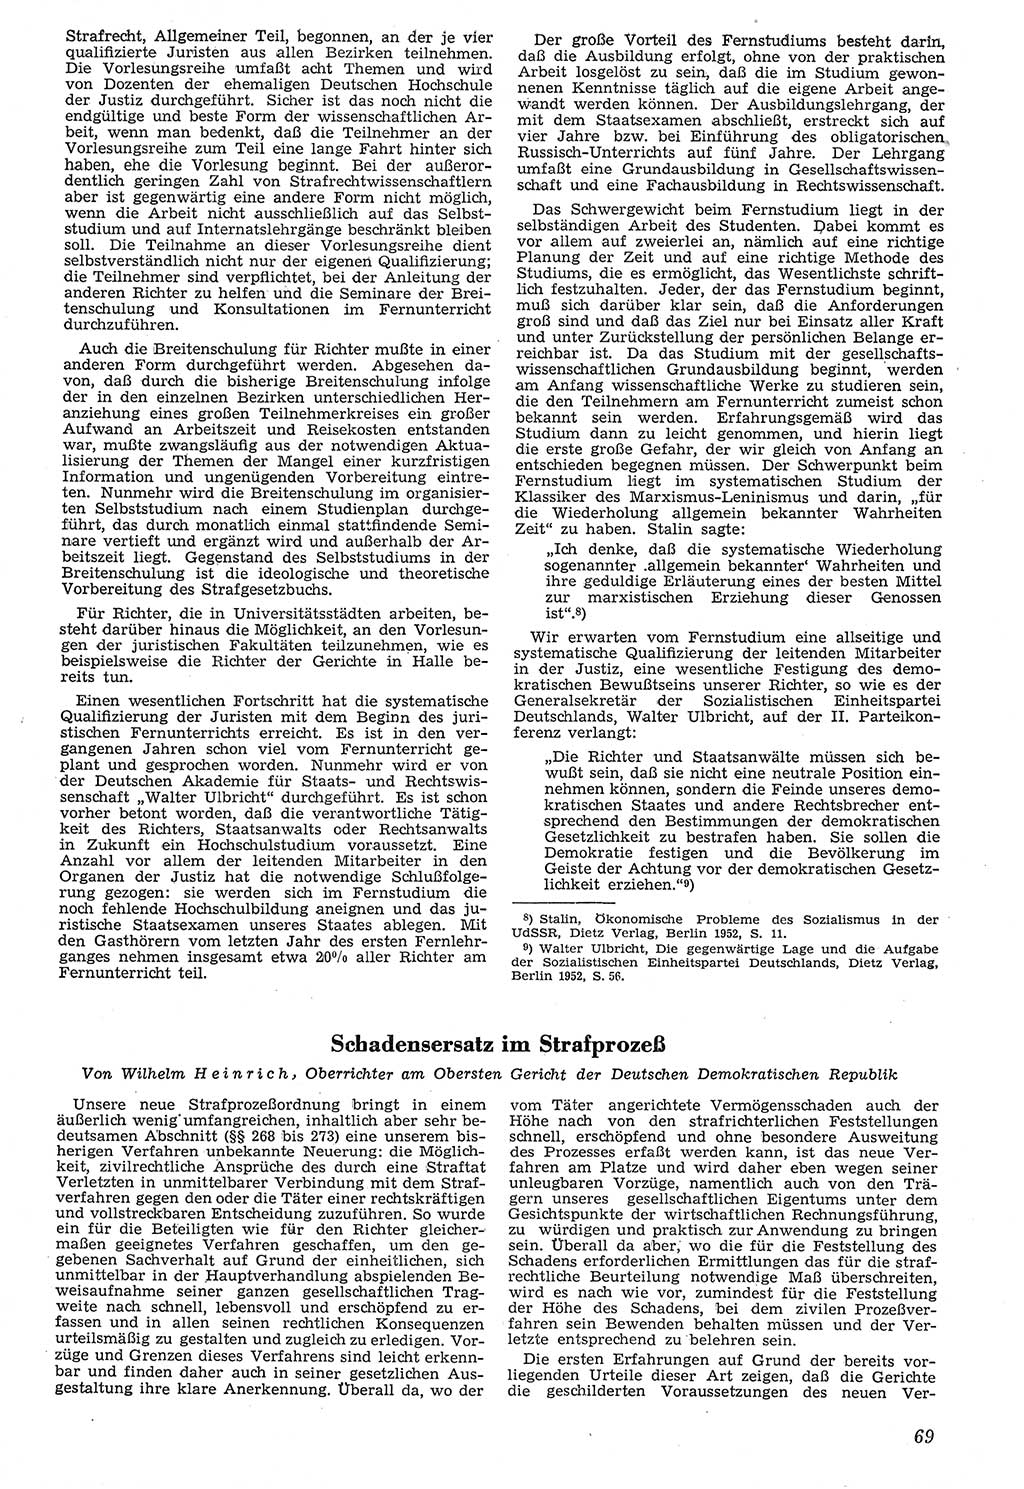 Neue Justiz (NJ), Zeitschrift für Recht und Rechtswissenschaft [Deutsche Demokratische Republik (DDR)], 7. Jahrgang 1953, Seite 69 (NJ DDR 1953, S. 69)